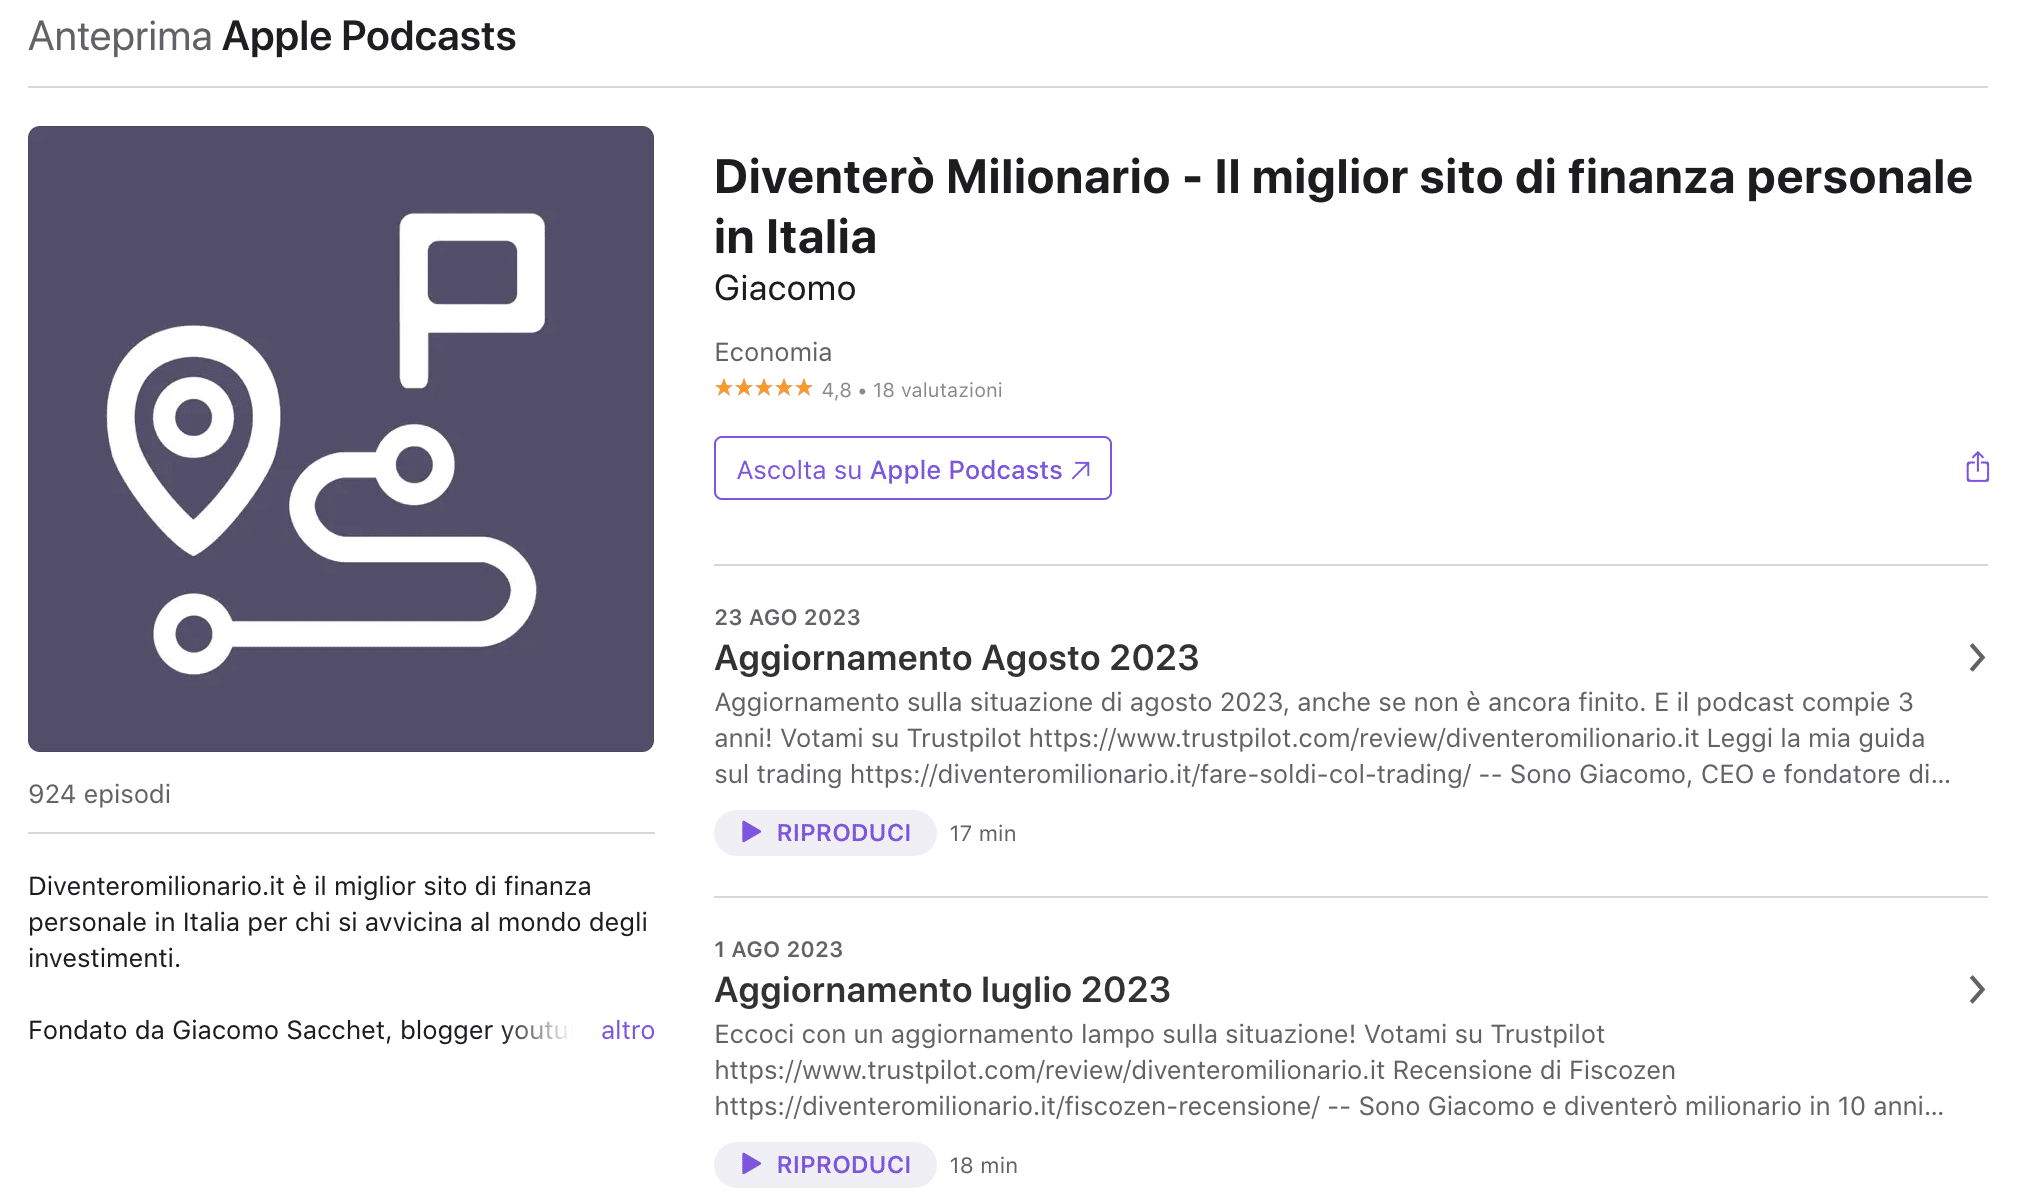 Il miglior podcast di finanza personale in Italia